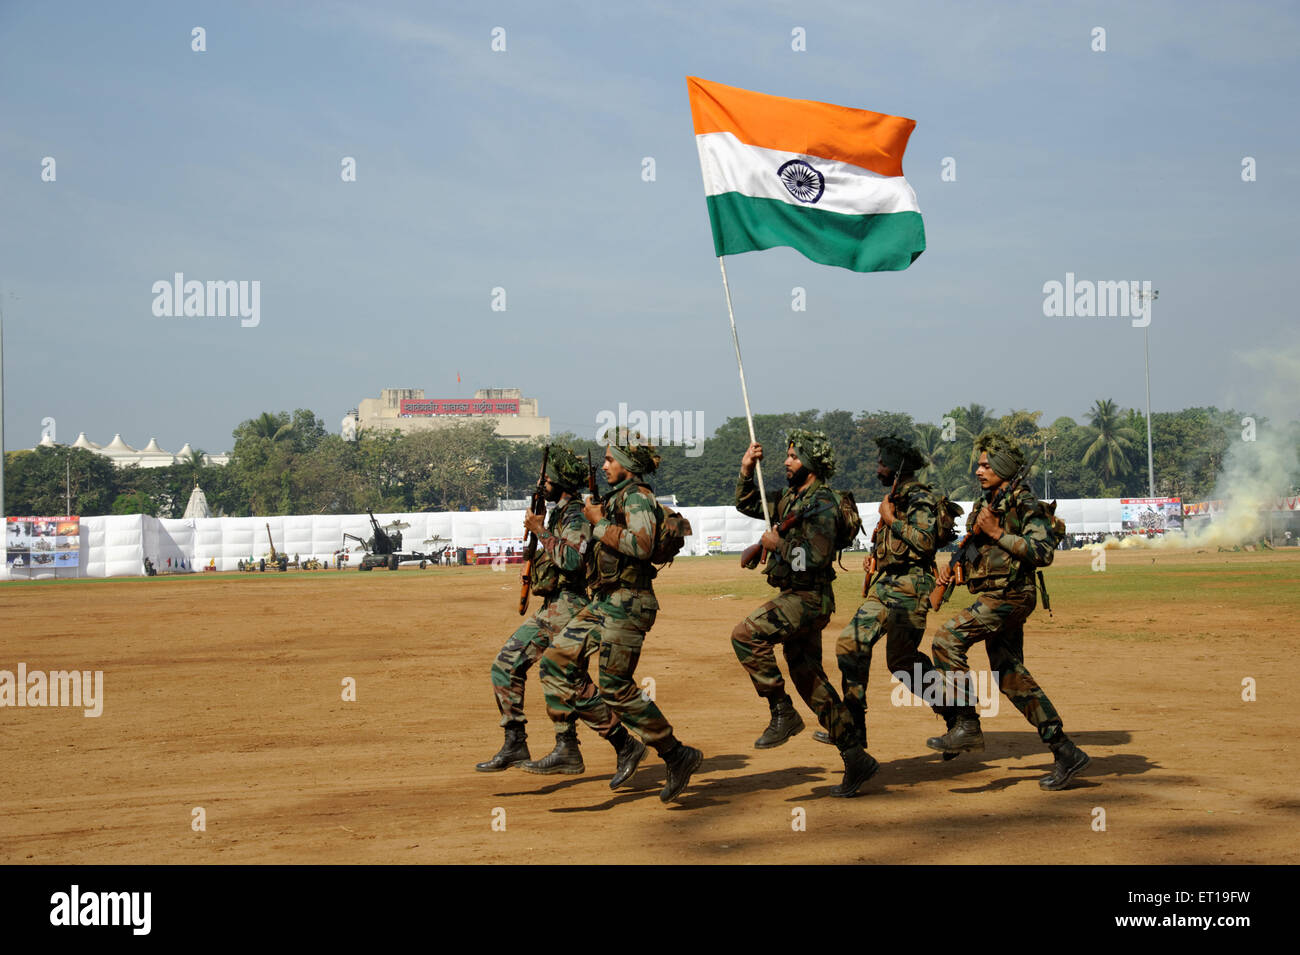 Indische Armee Tag der Republik feier Parade mit Flagge von Indien dadar Mumbai Maharashtra Indien Asien Stockfoto